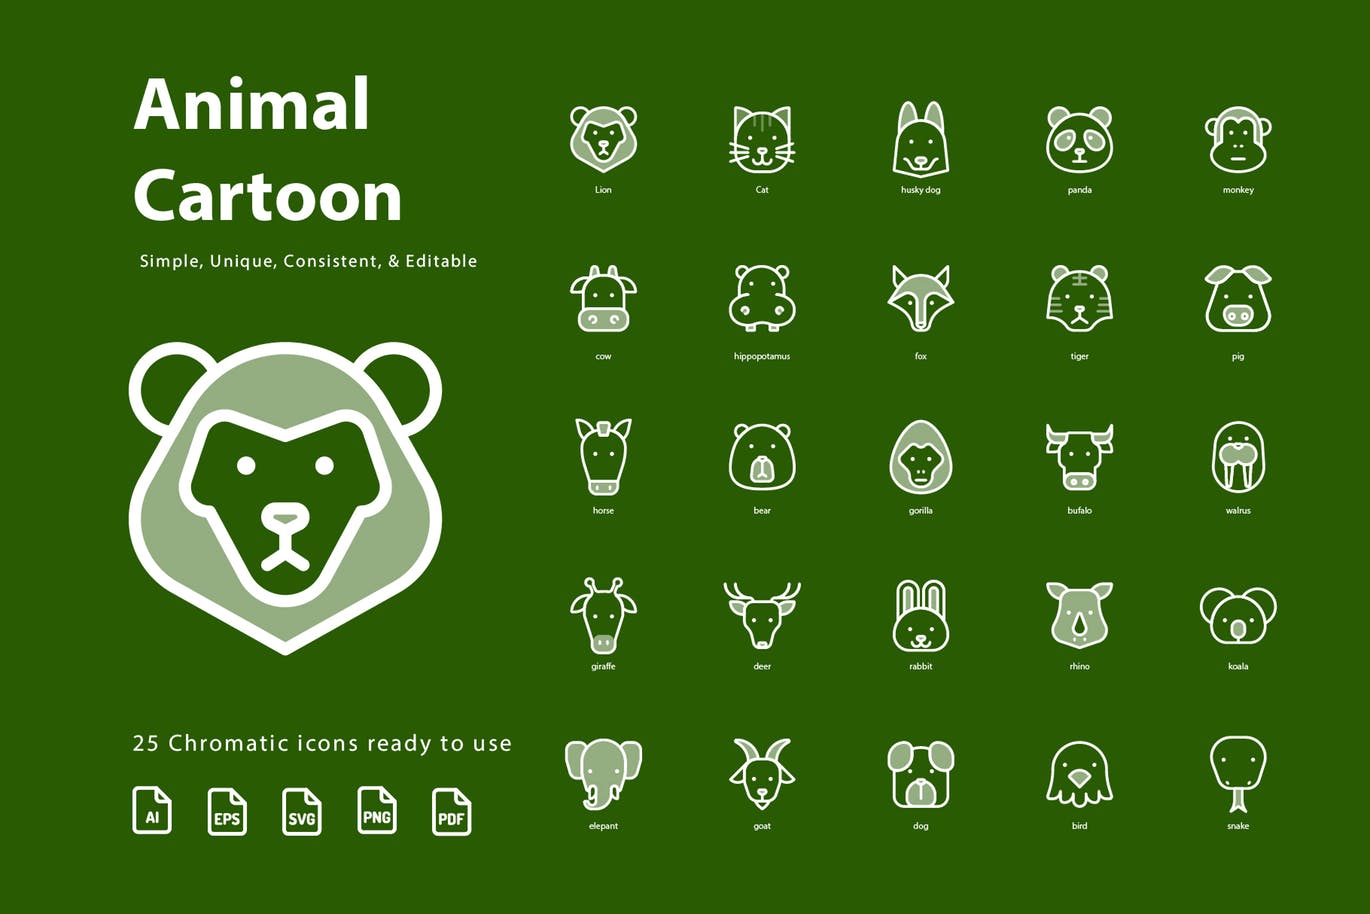 动物卡通形象彩色矢量图标素材 Animal Cartoon (Chromatic)插图(2)